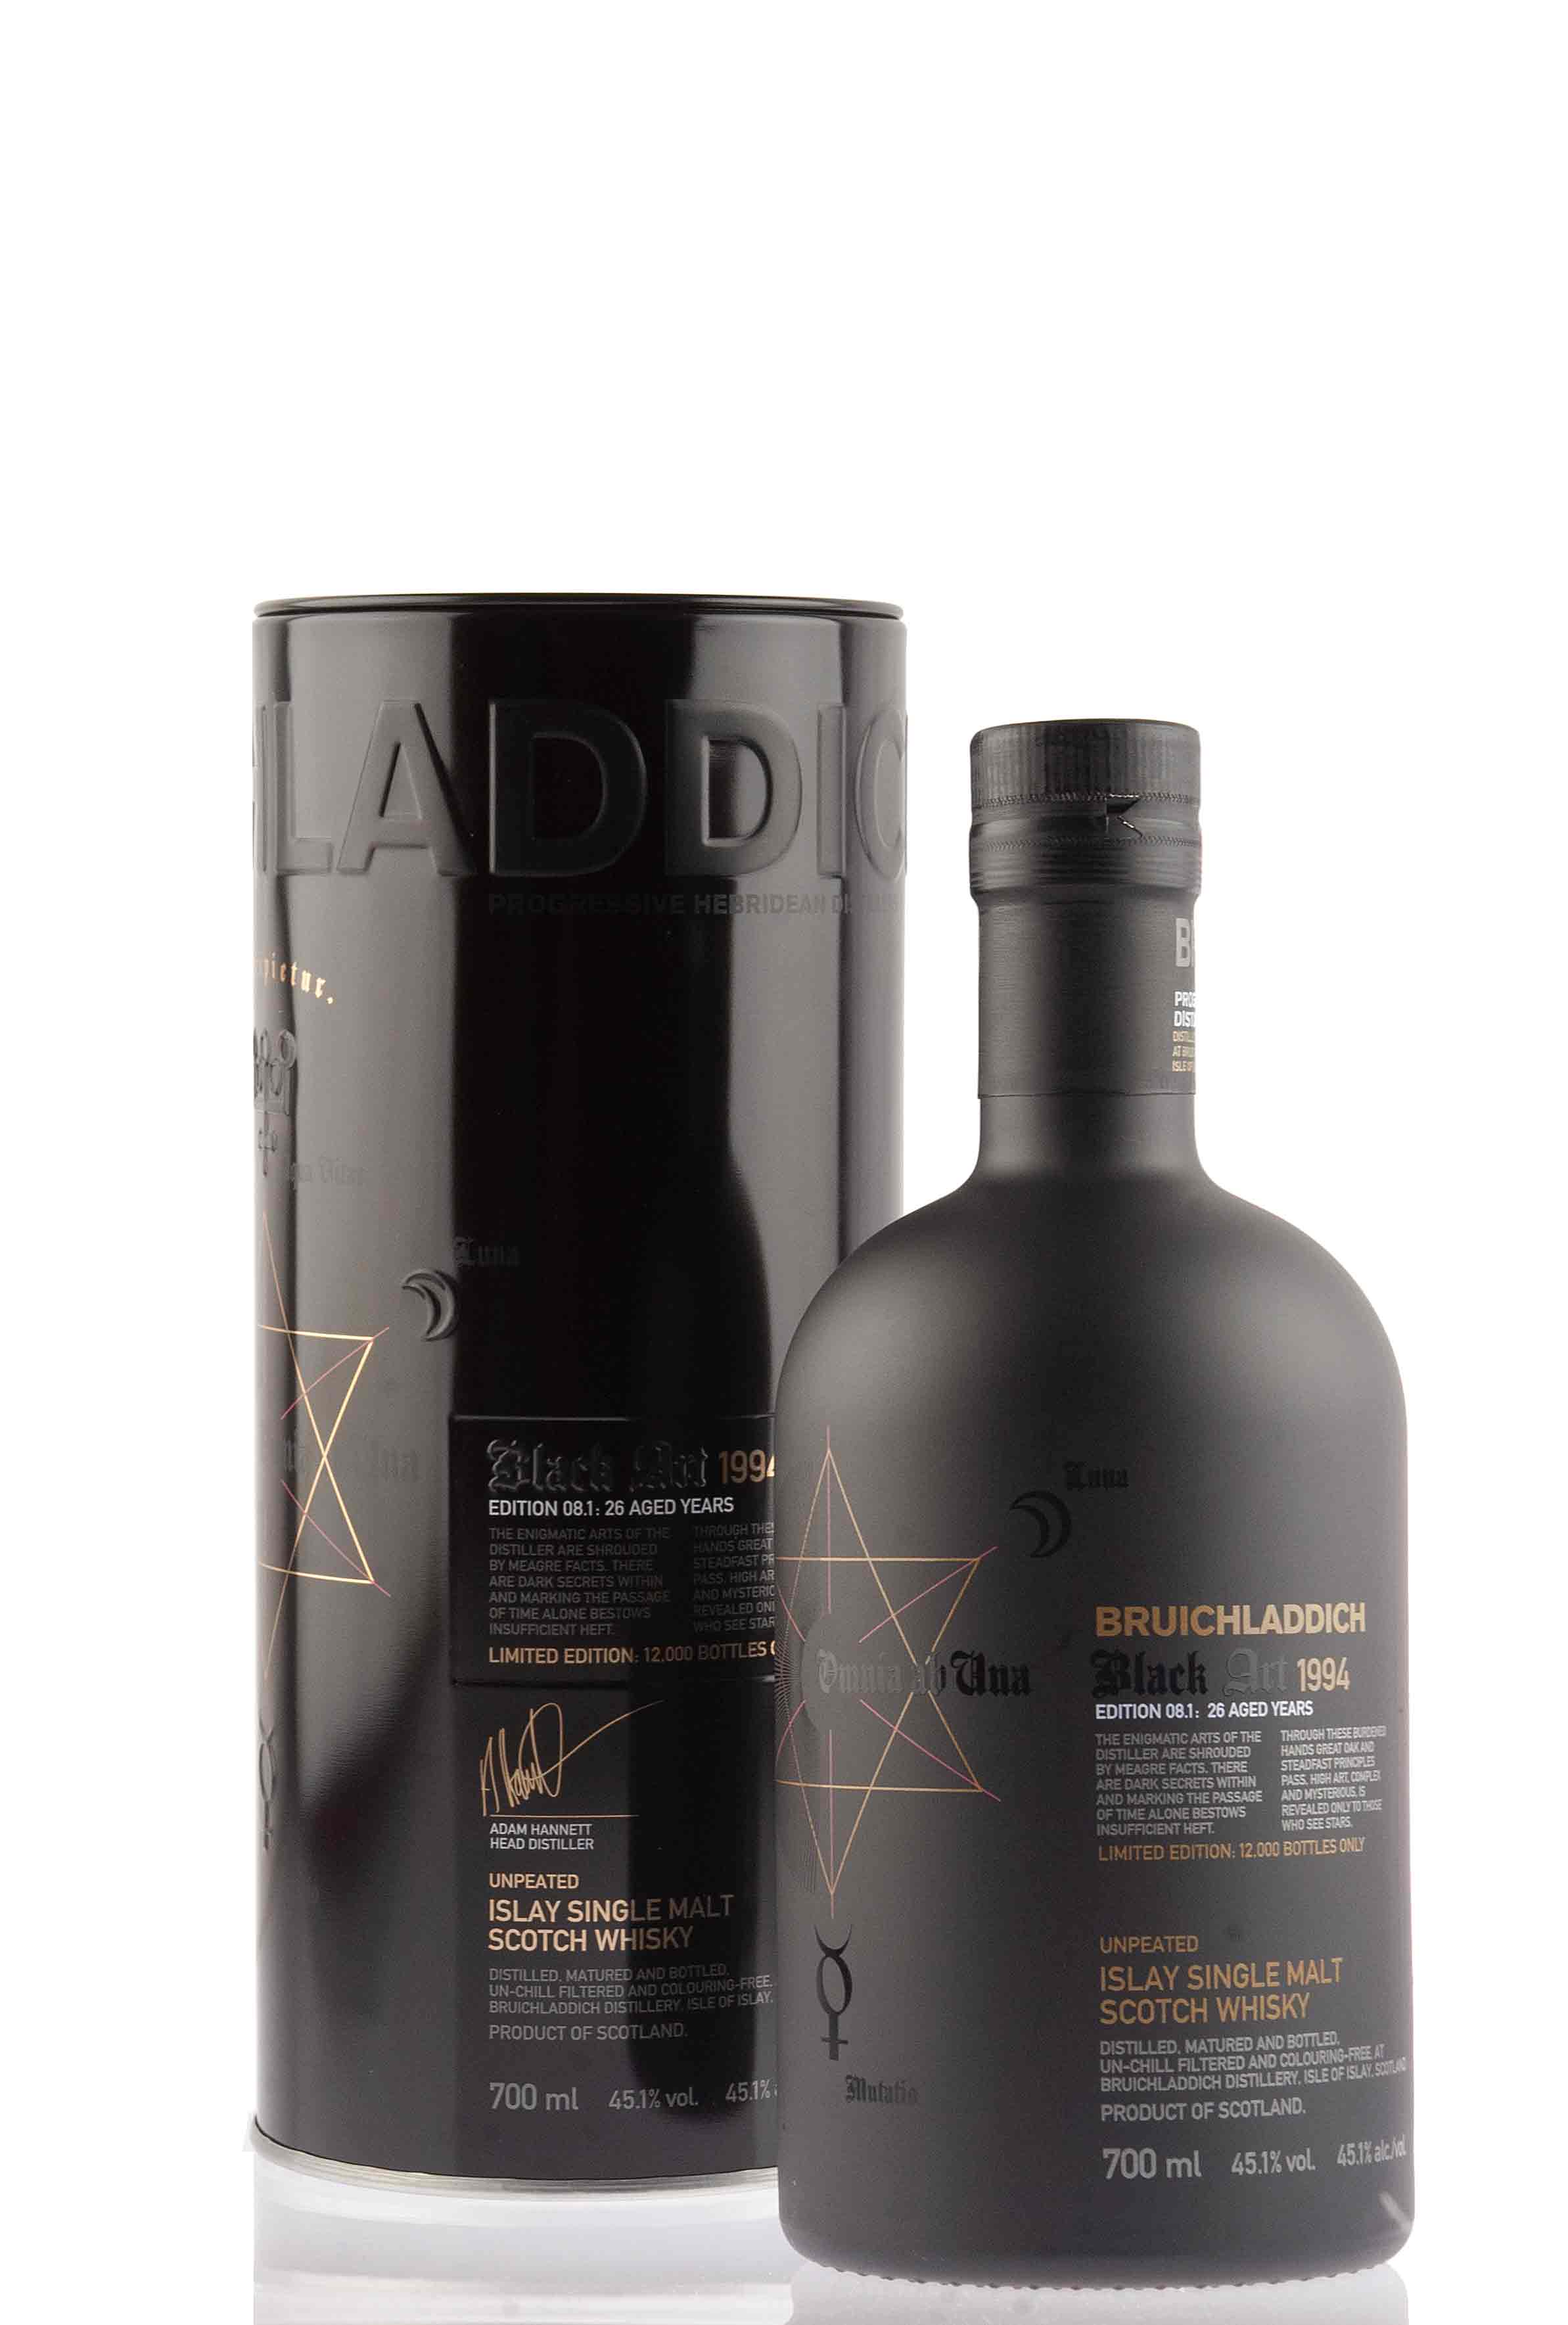 Bruichladdich Black Art -08.1 - 26 Year Old - 1994 | Abbey Whisky